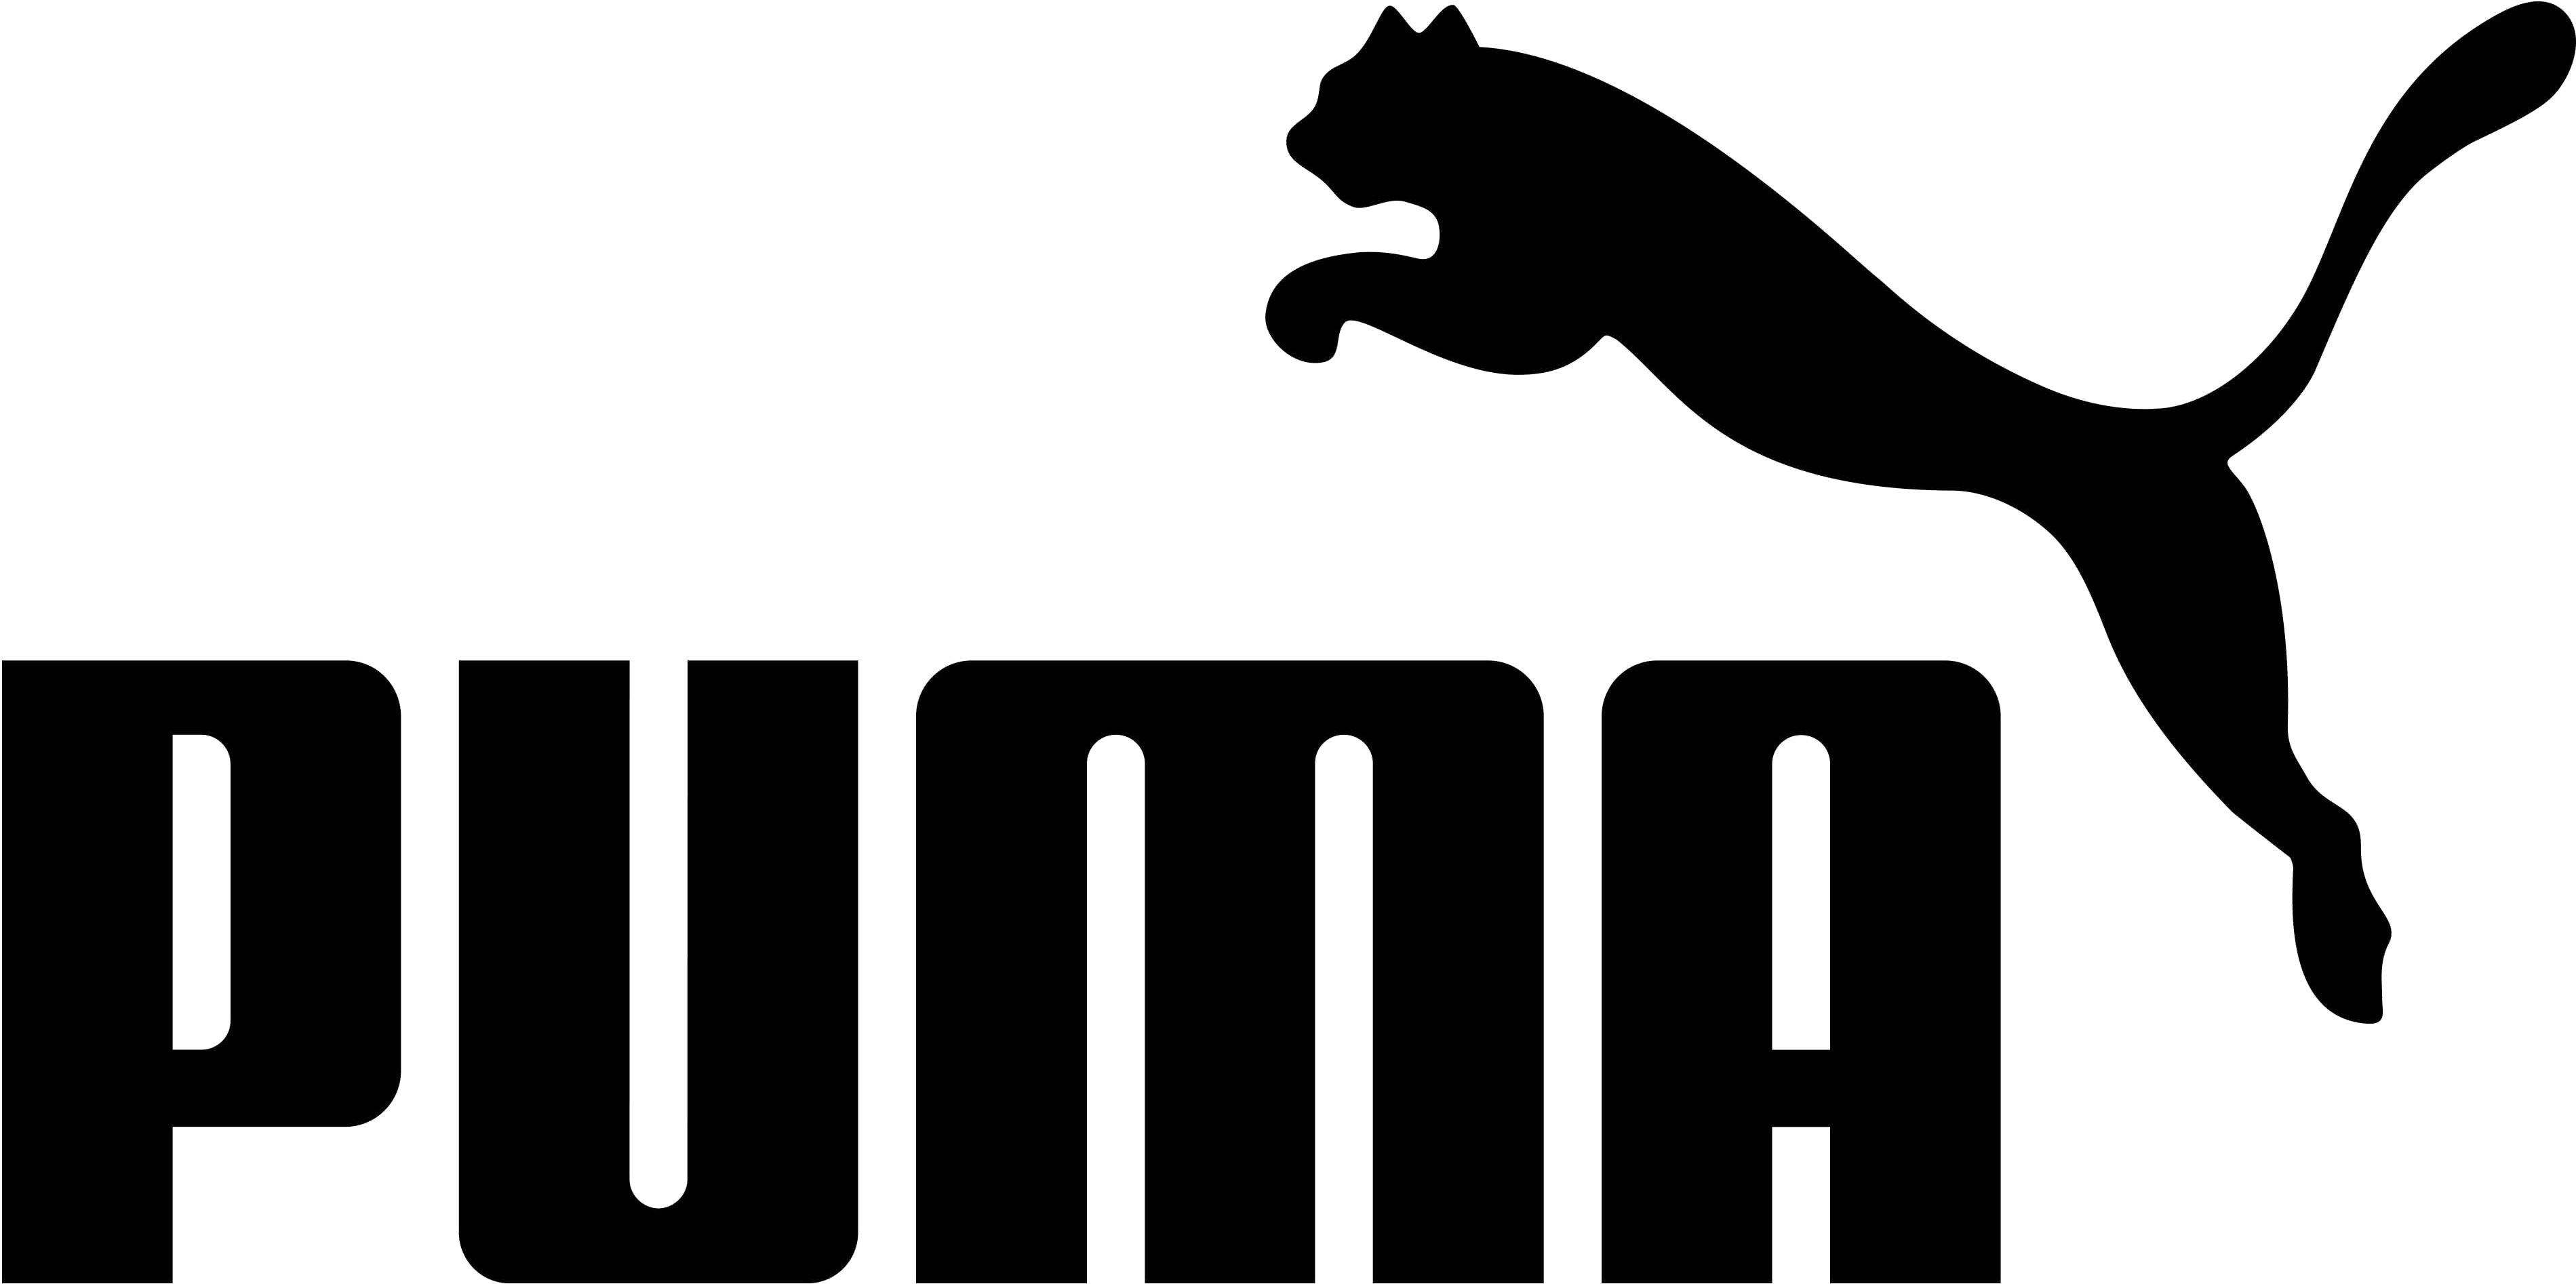 Puma Sport